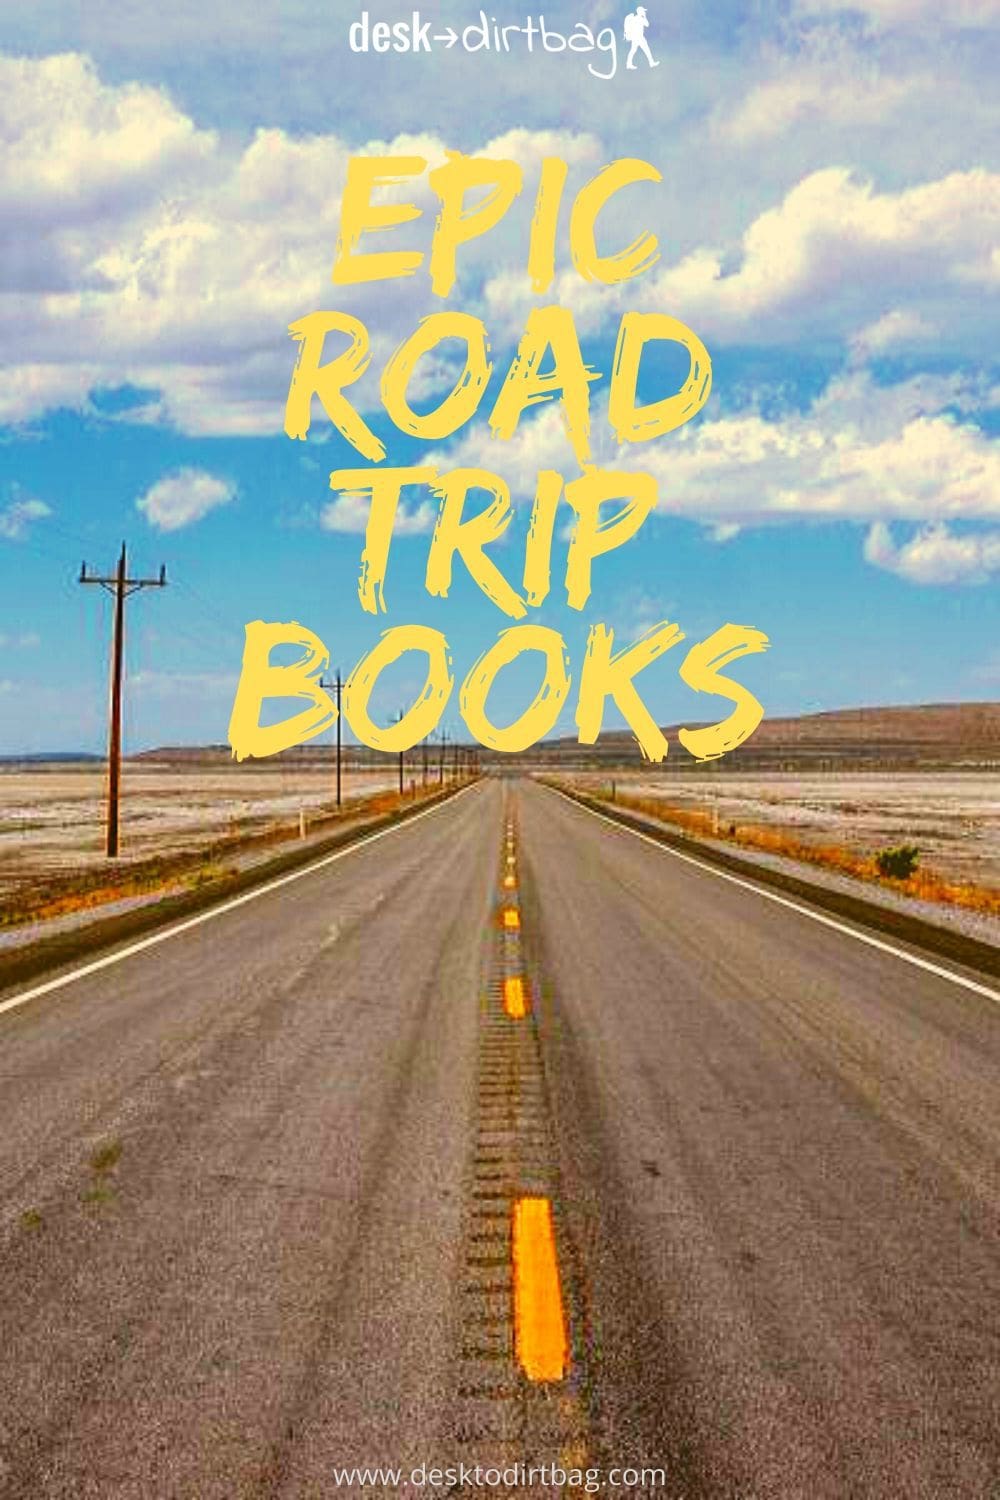 book a road trip